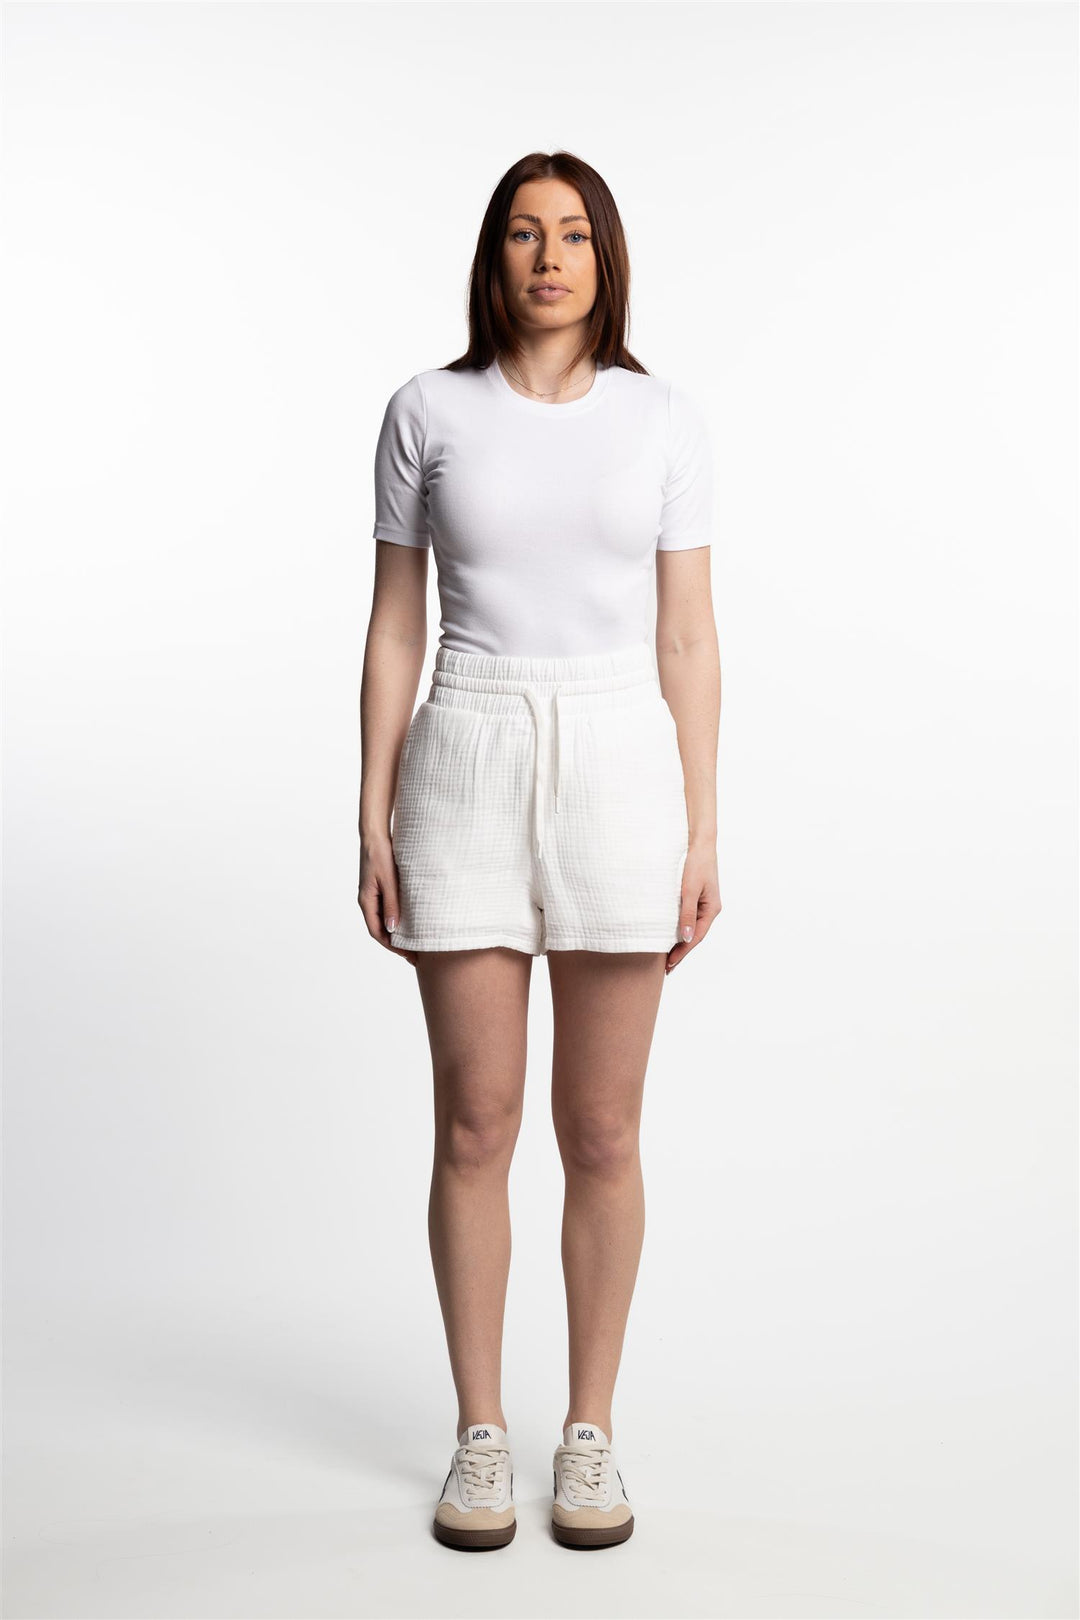 Brianne Crepe Shorts- WhiteBrianne Crepe Shorts- White